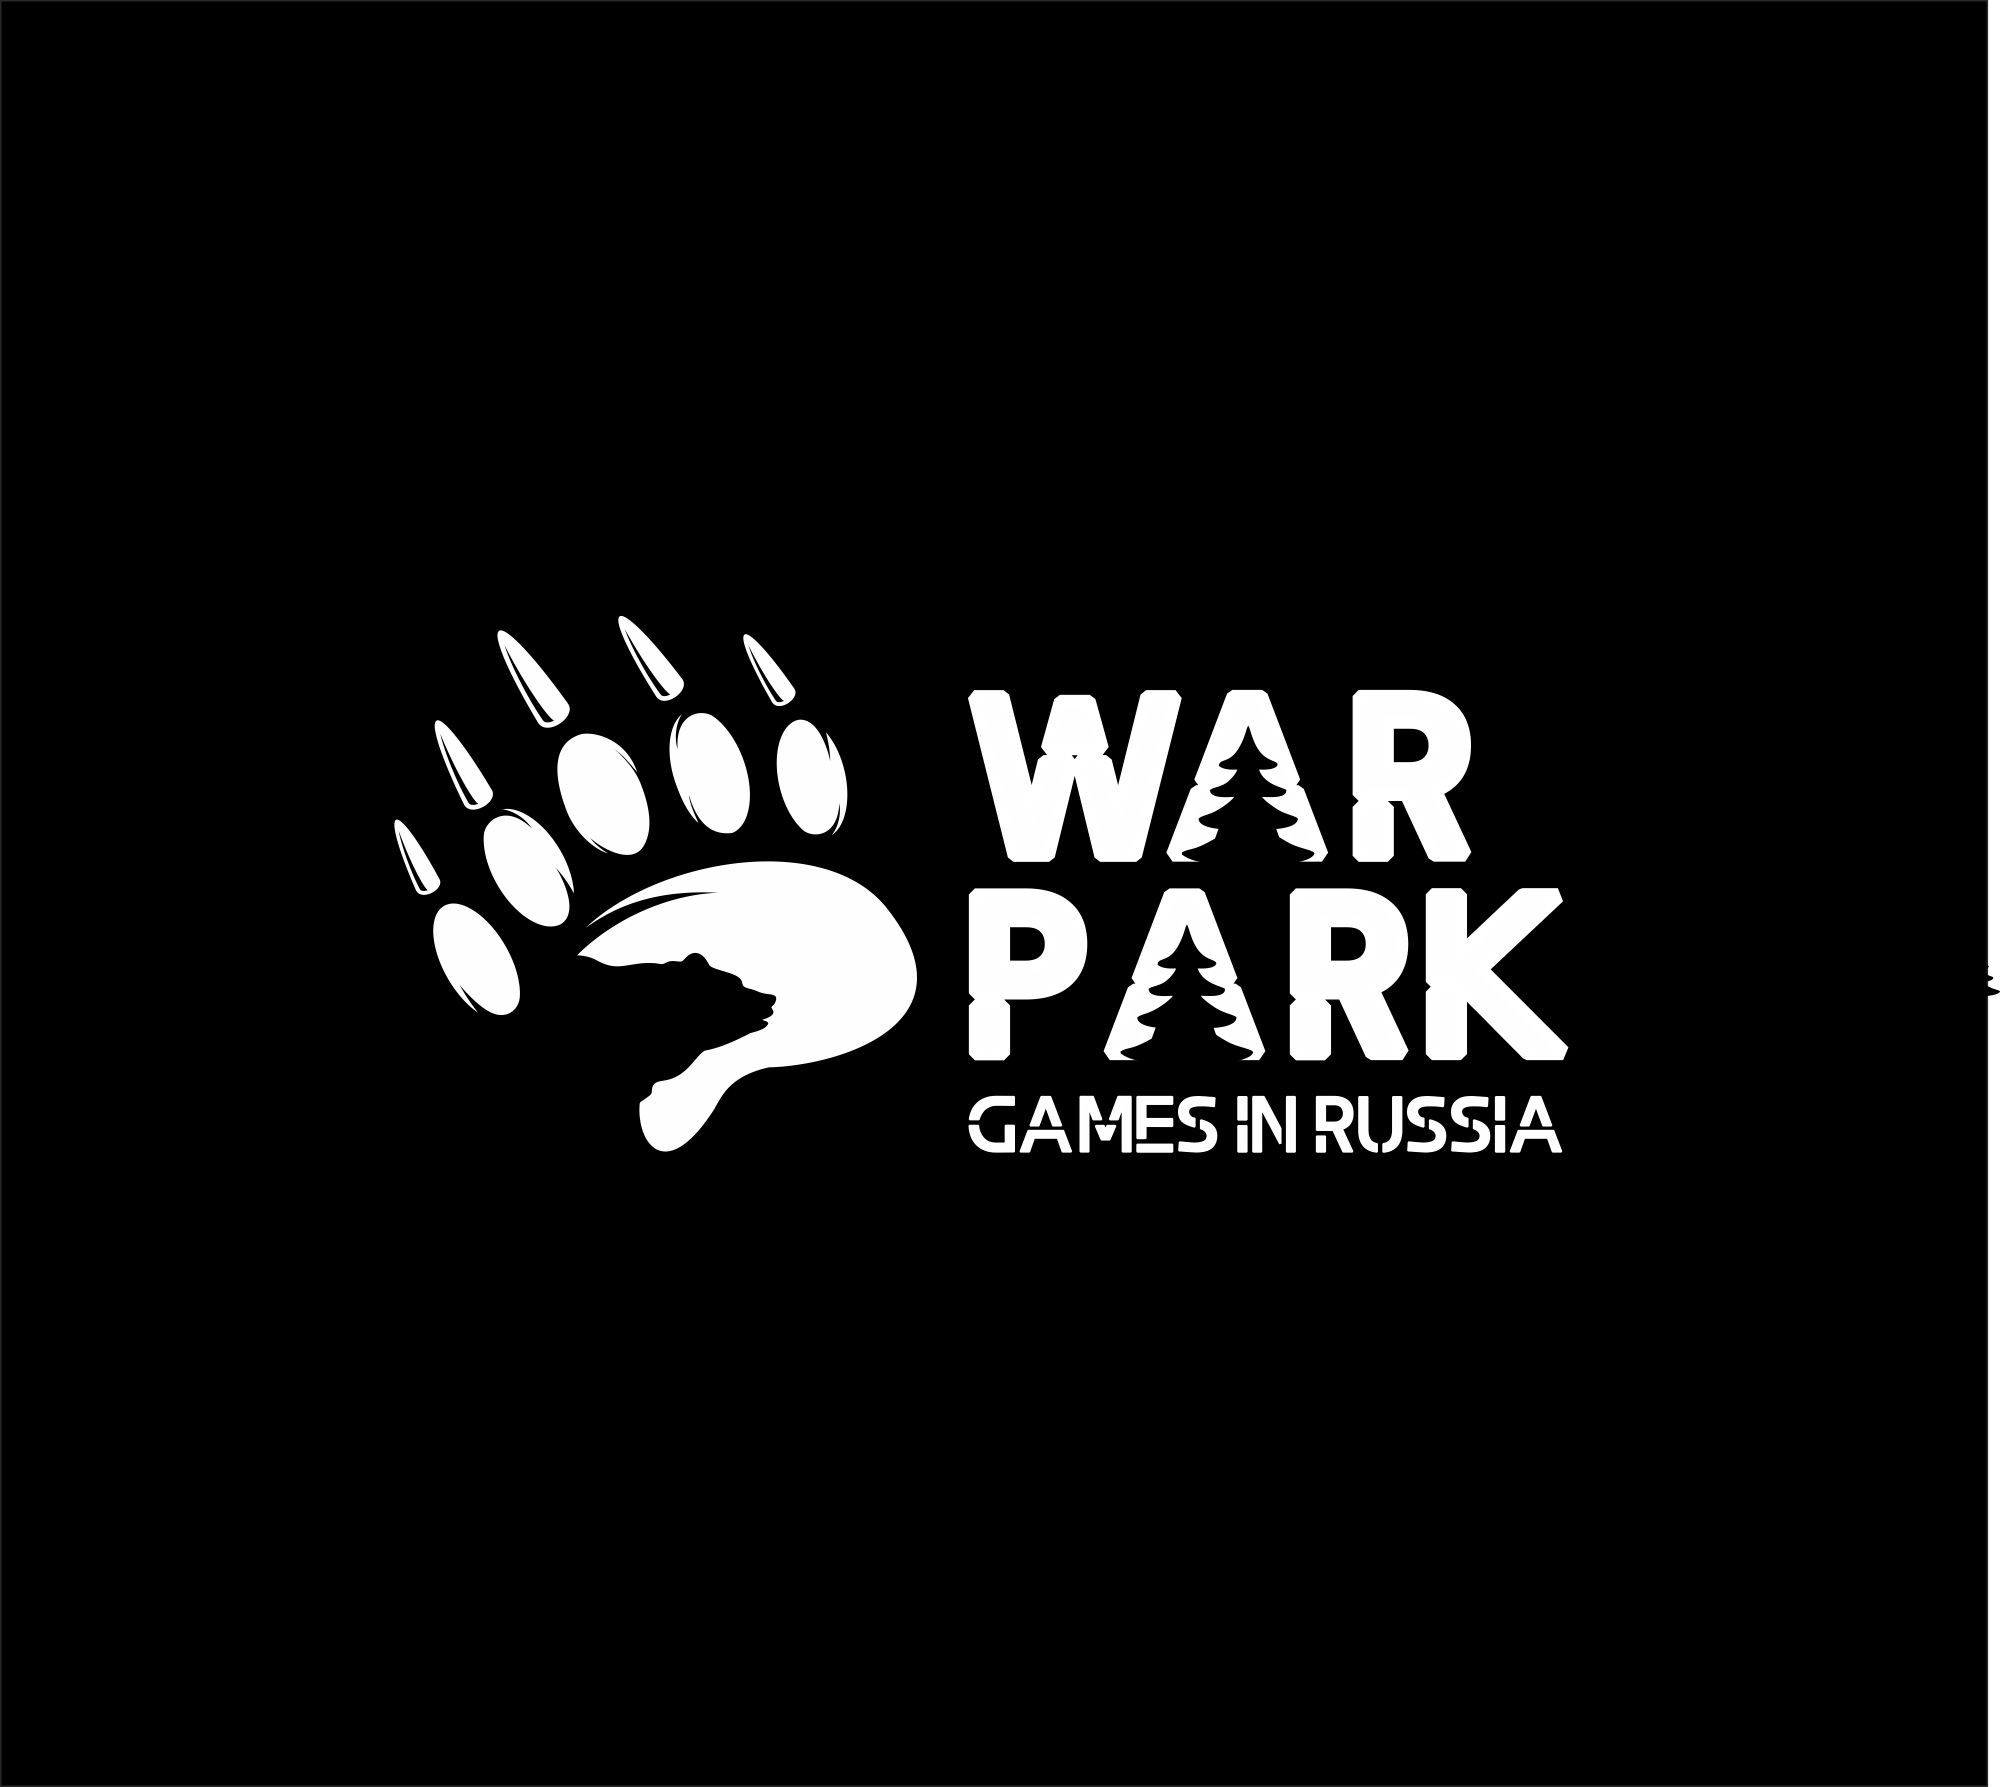 Логотип для WAR GAMES PARK  - дизайнер salik